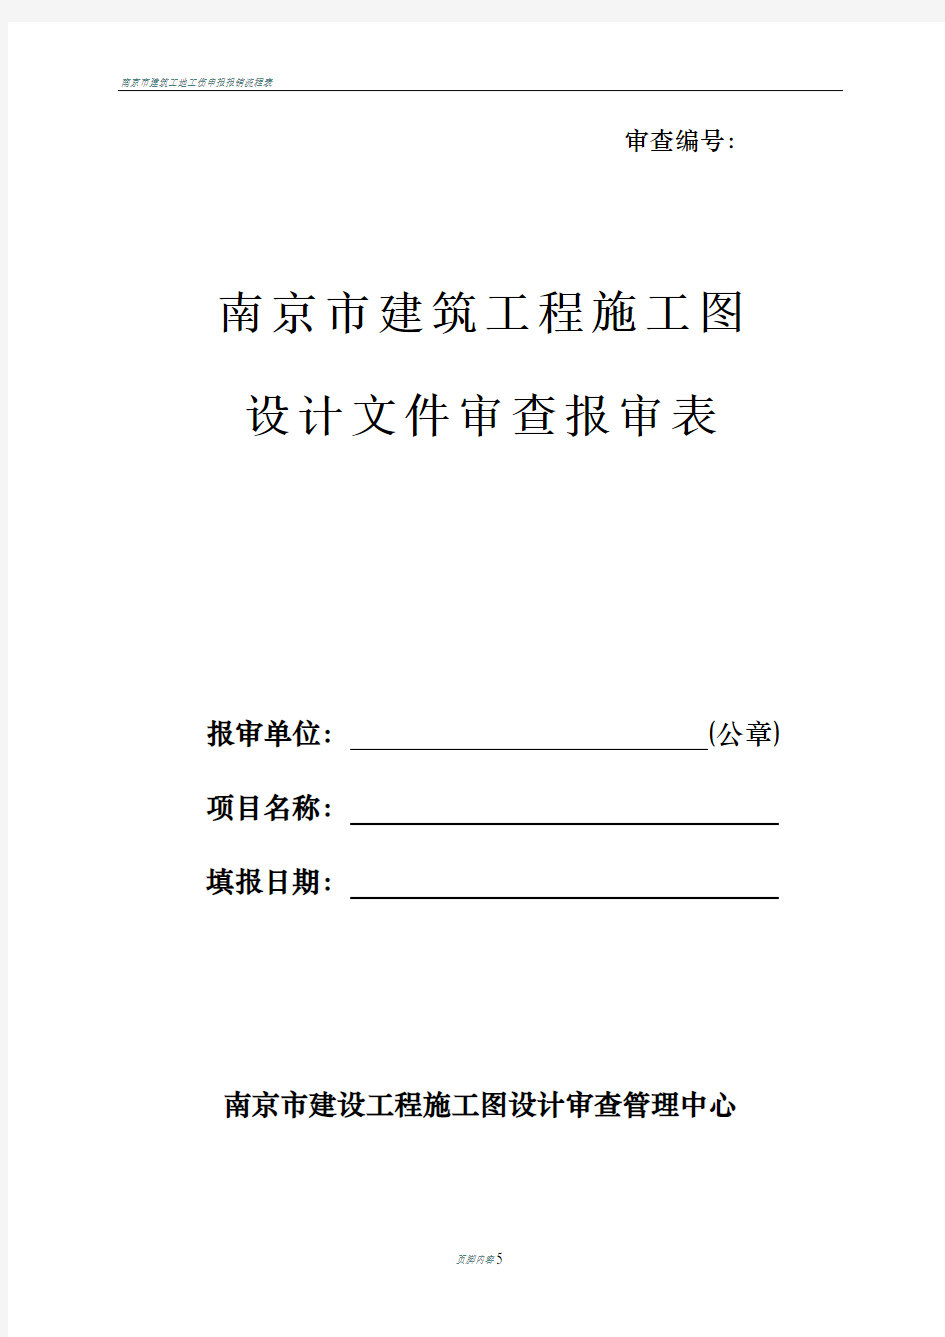 南京市建筑工程施工图设计文件审查报审表